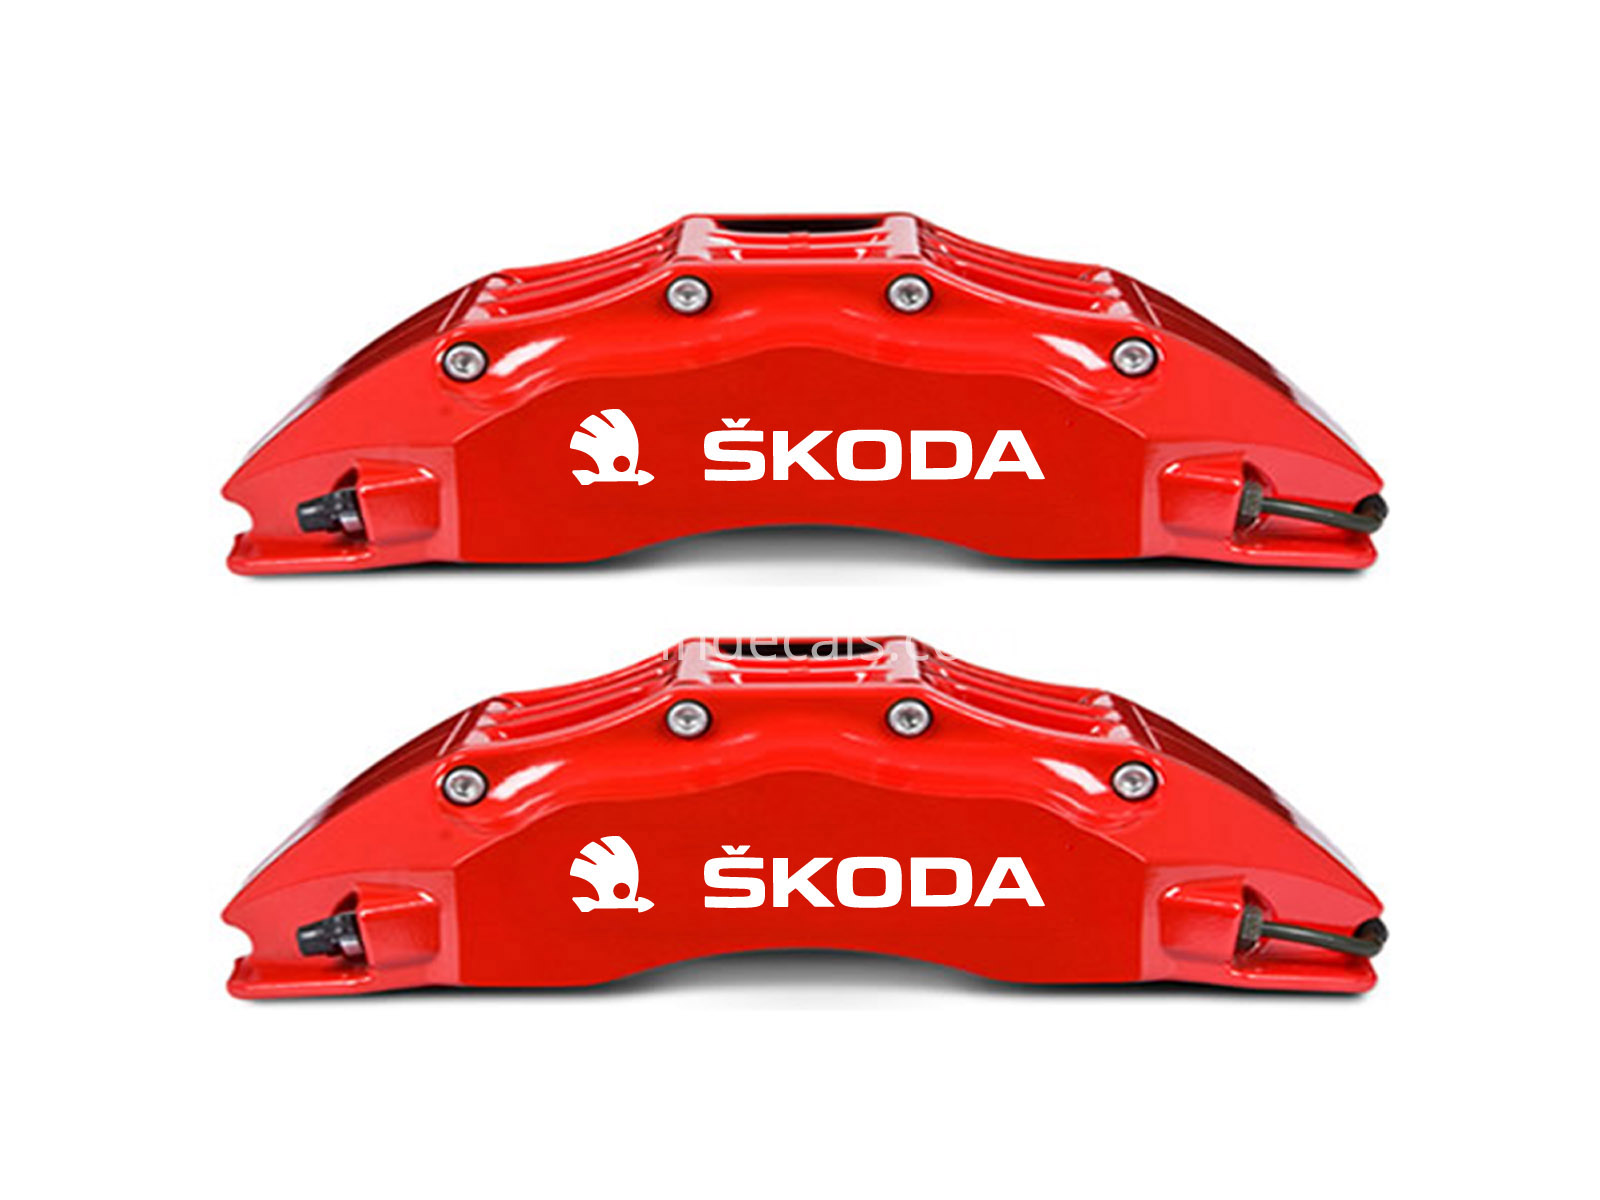 6 x Skoda Stickers for Brakes - White